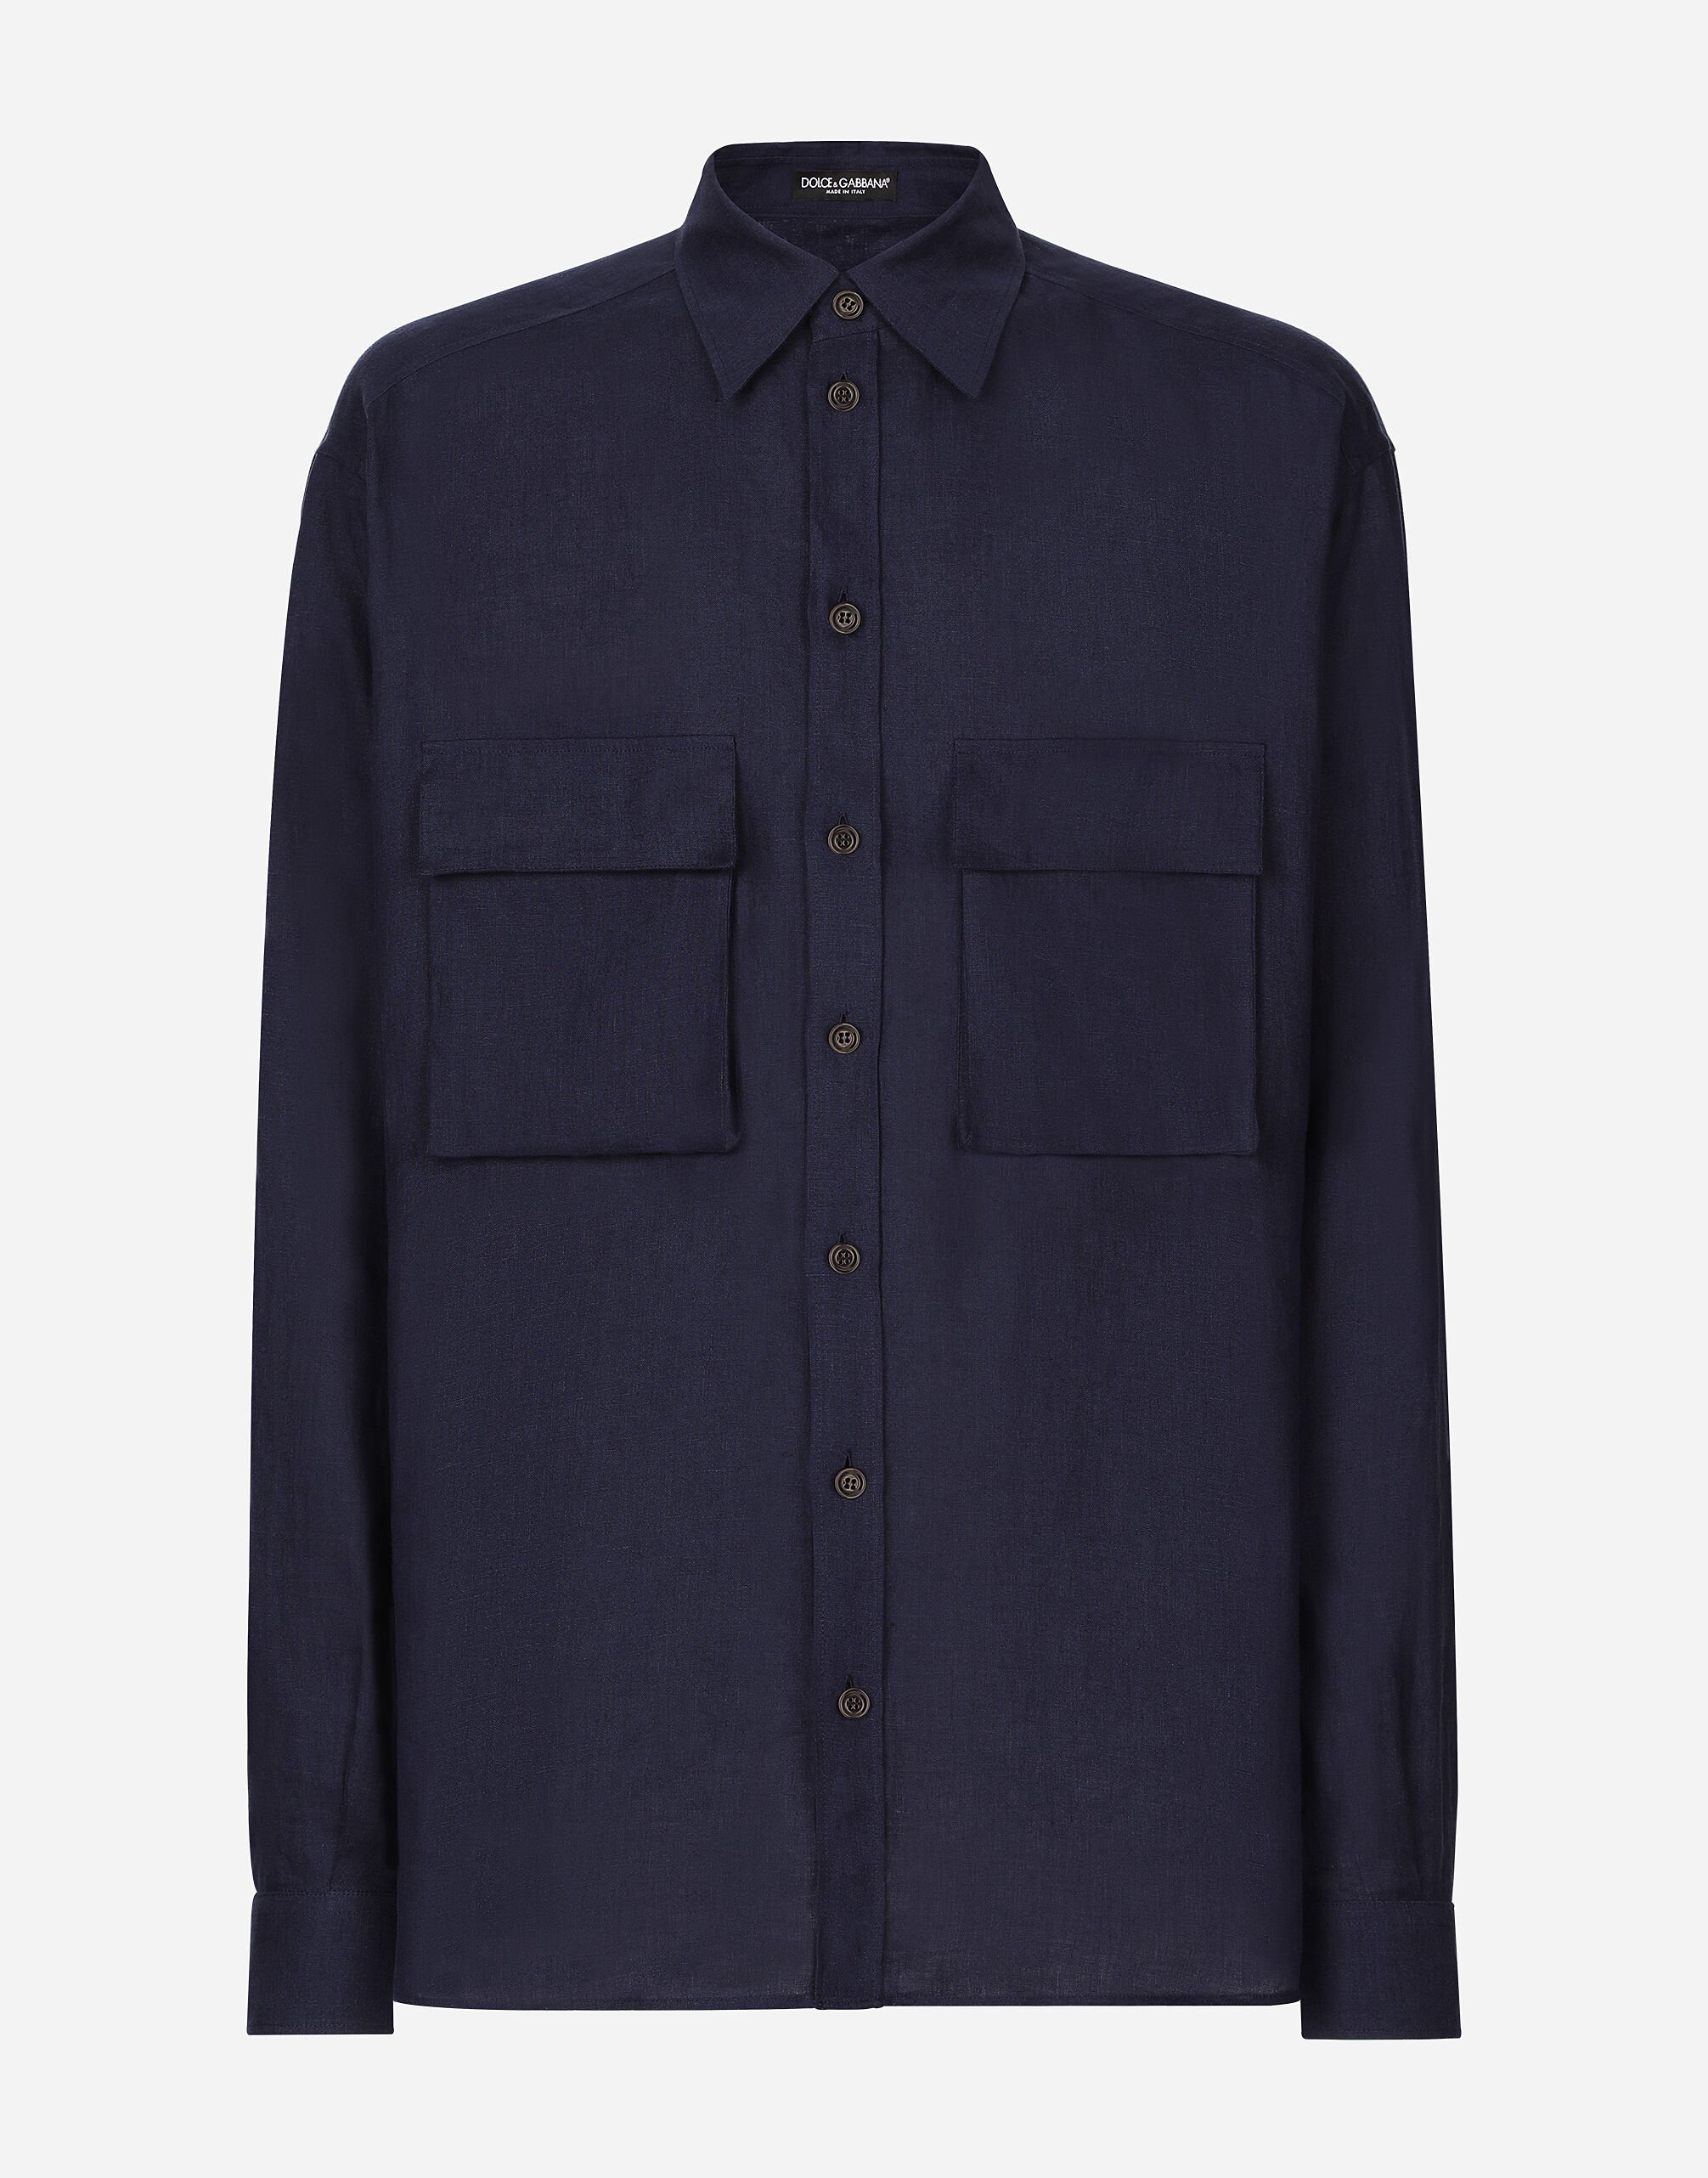 Dolce & Gabbana Oversize linen shirt with pockets Print G5IX8THS5RU